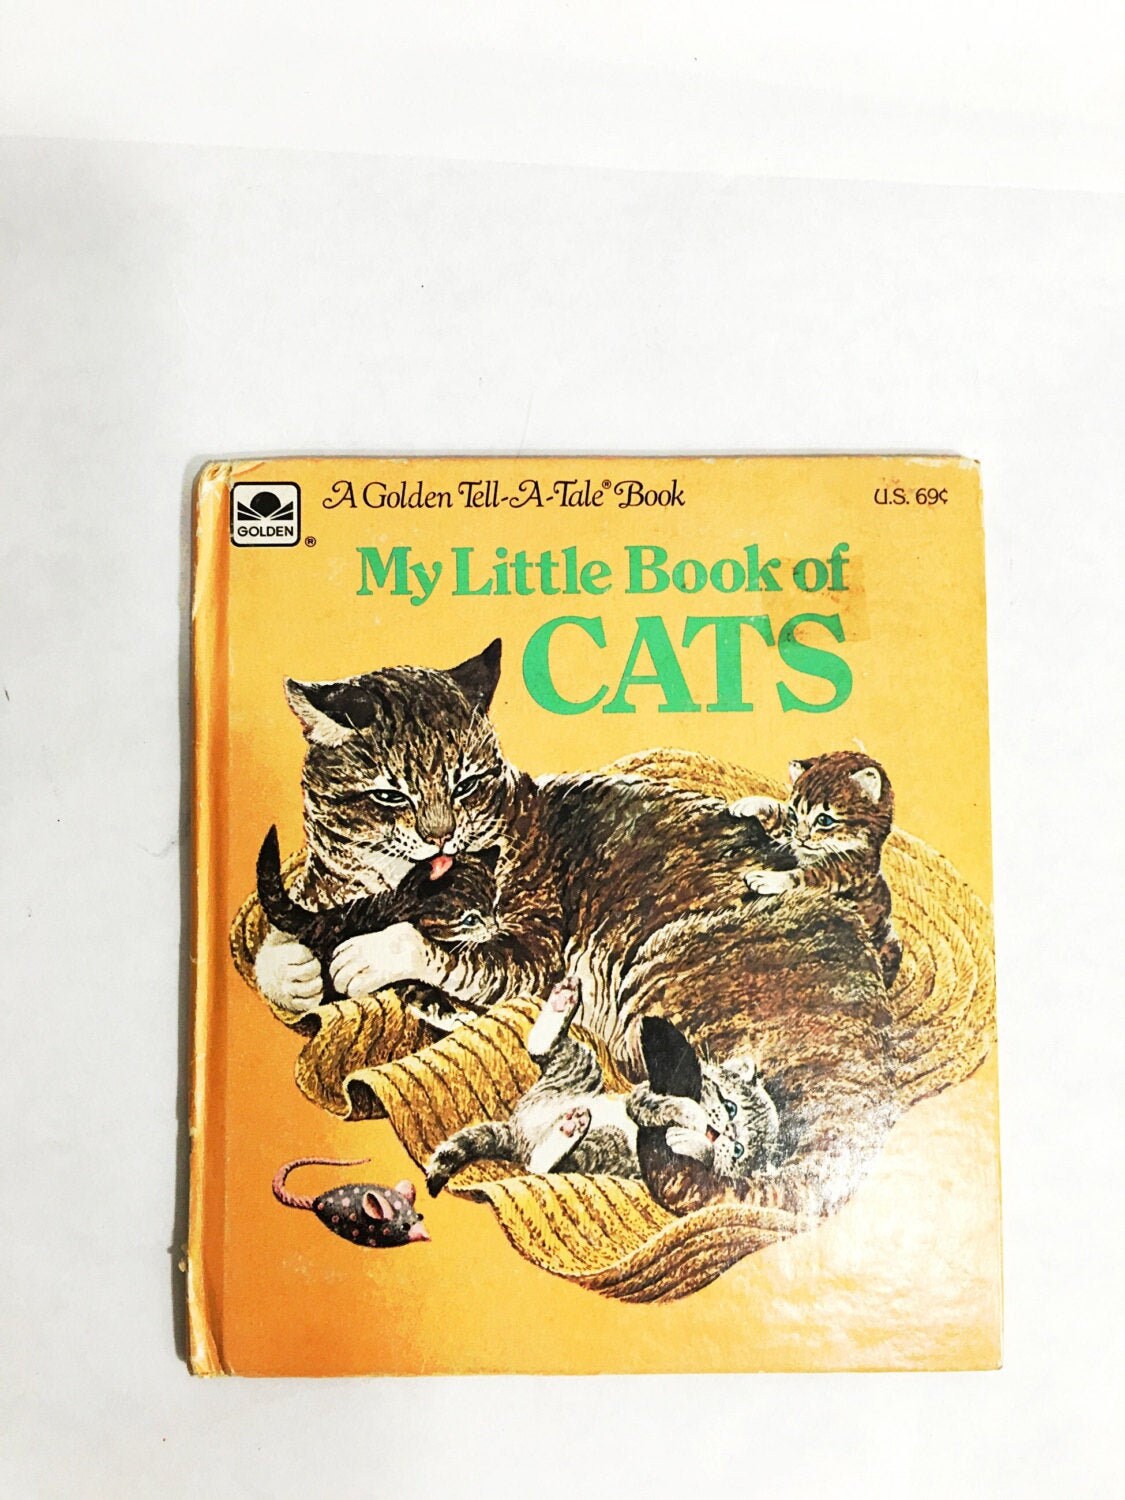 1976 My Little Book of Cats Golden Tell a Tale Book Little Golden Book Yellow kitten kitty vintage children's book